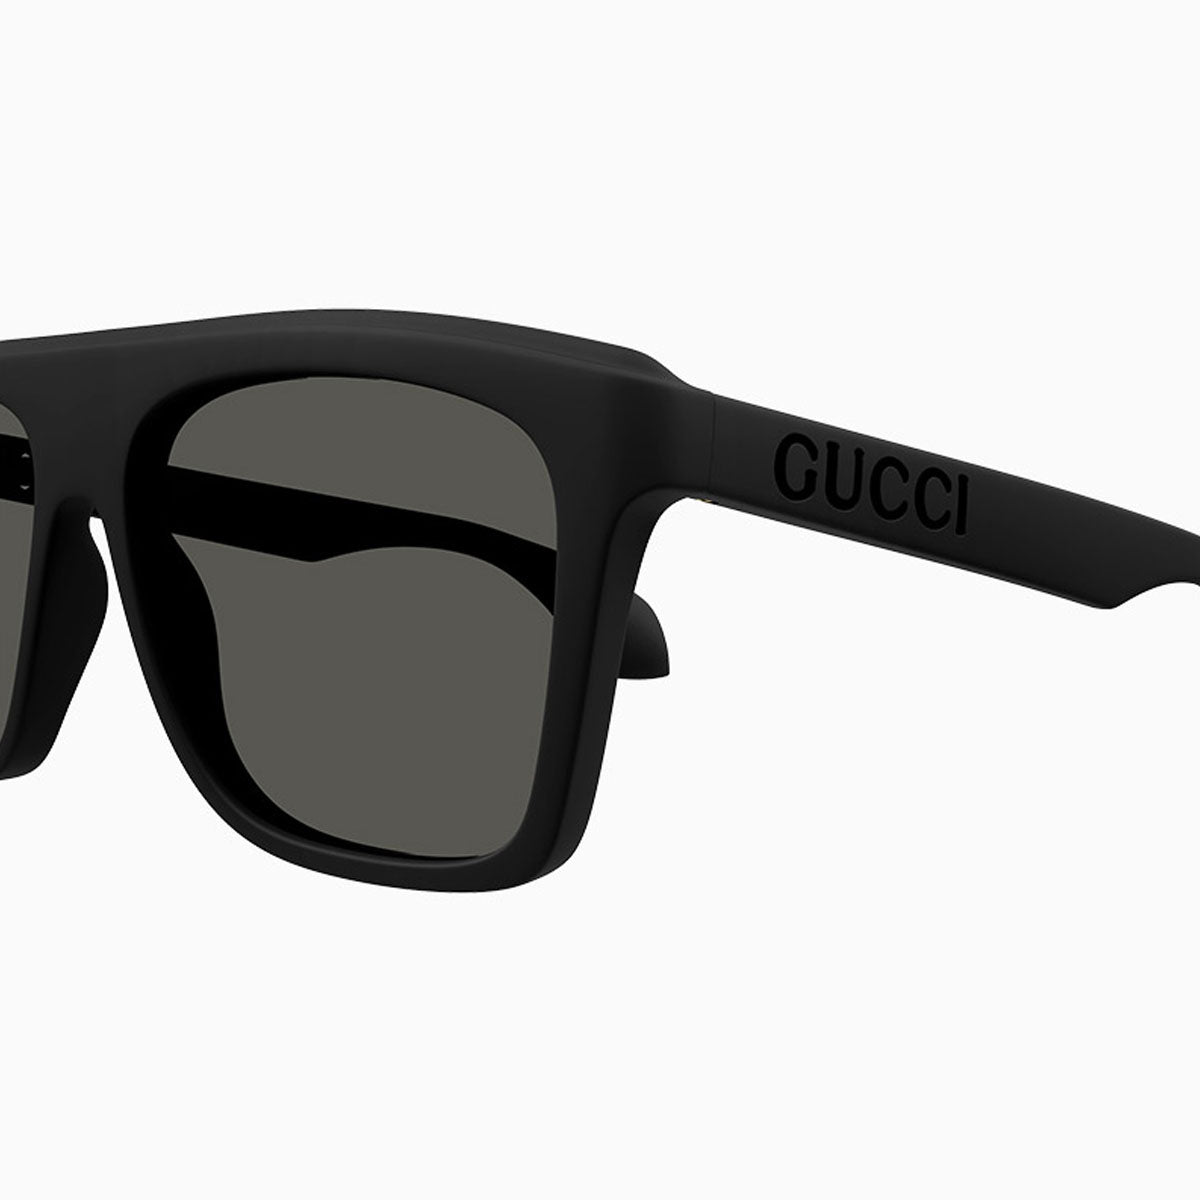 mens-gucci-black-grey-lettering-sunglasses-gg1570s-001